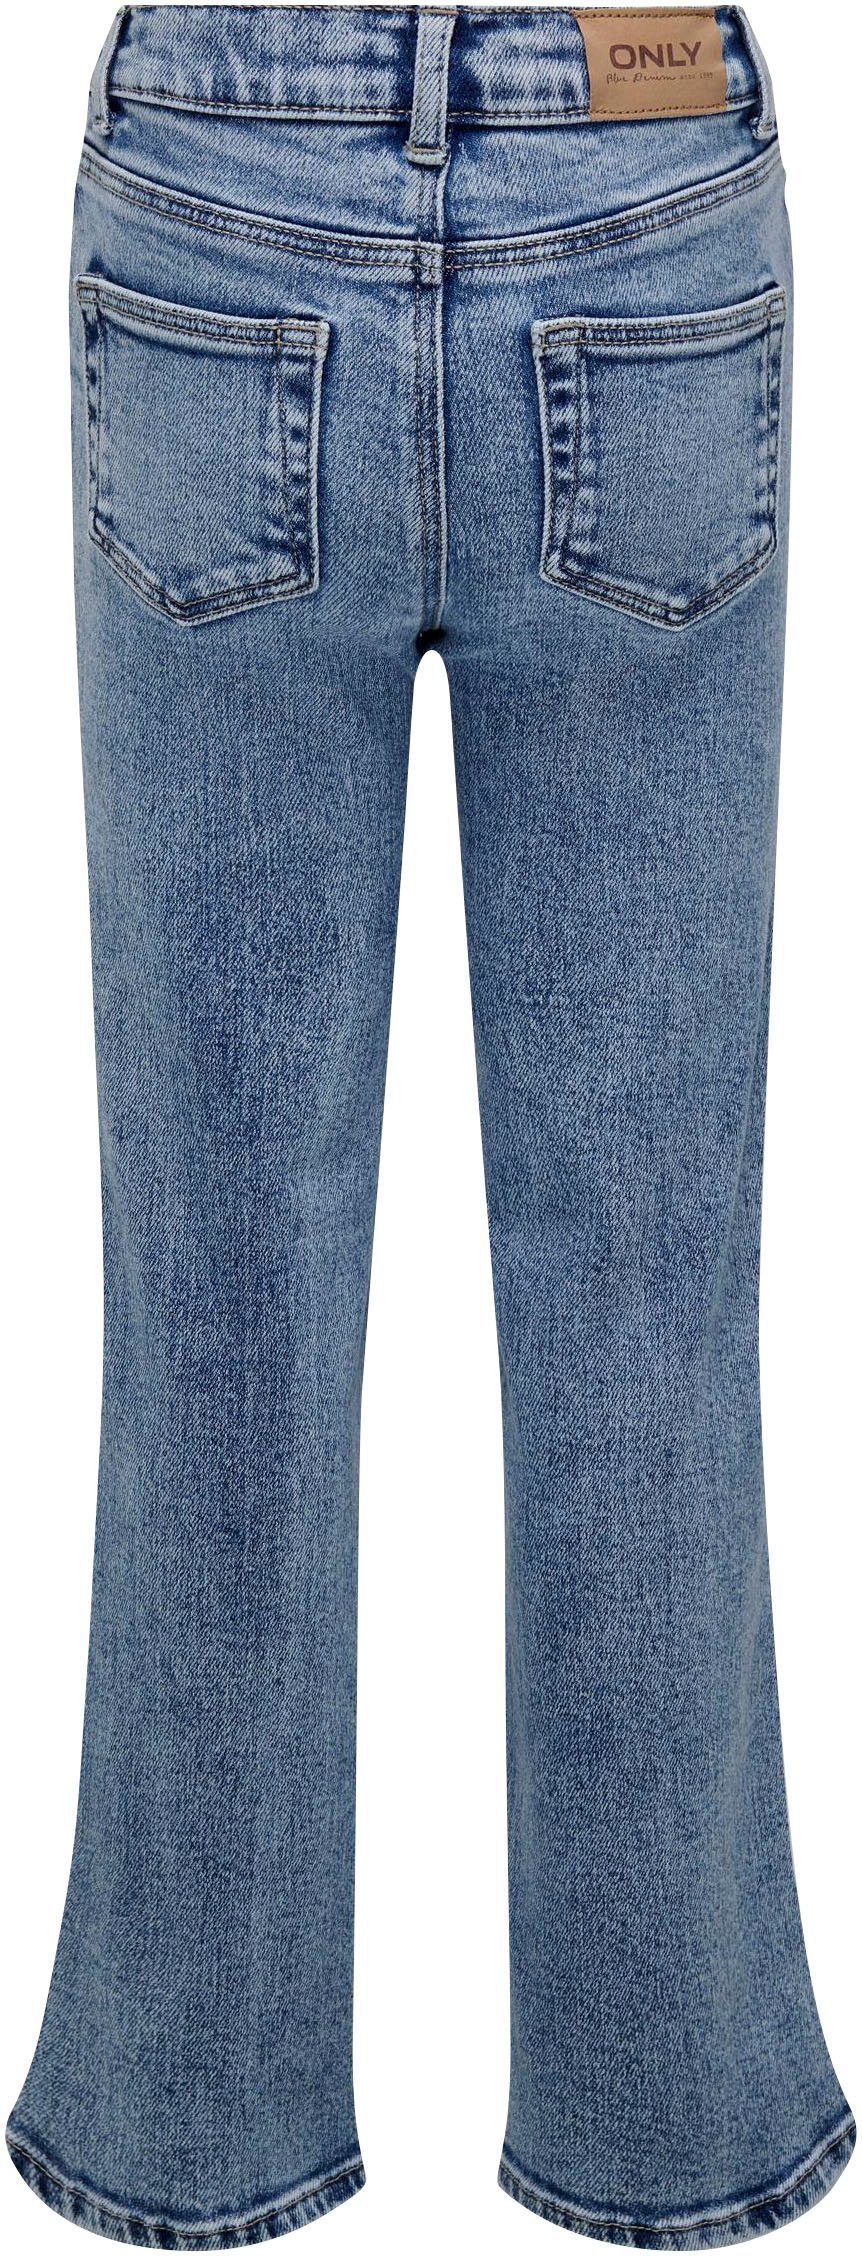 DEST KIDS ONLY DN WIDE 5-Pocket-Jeans LEG KOGJUICY